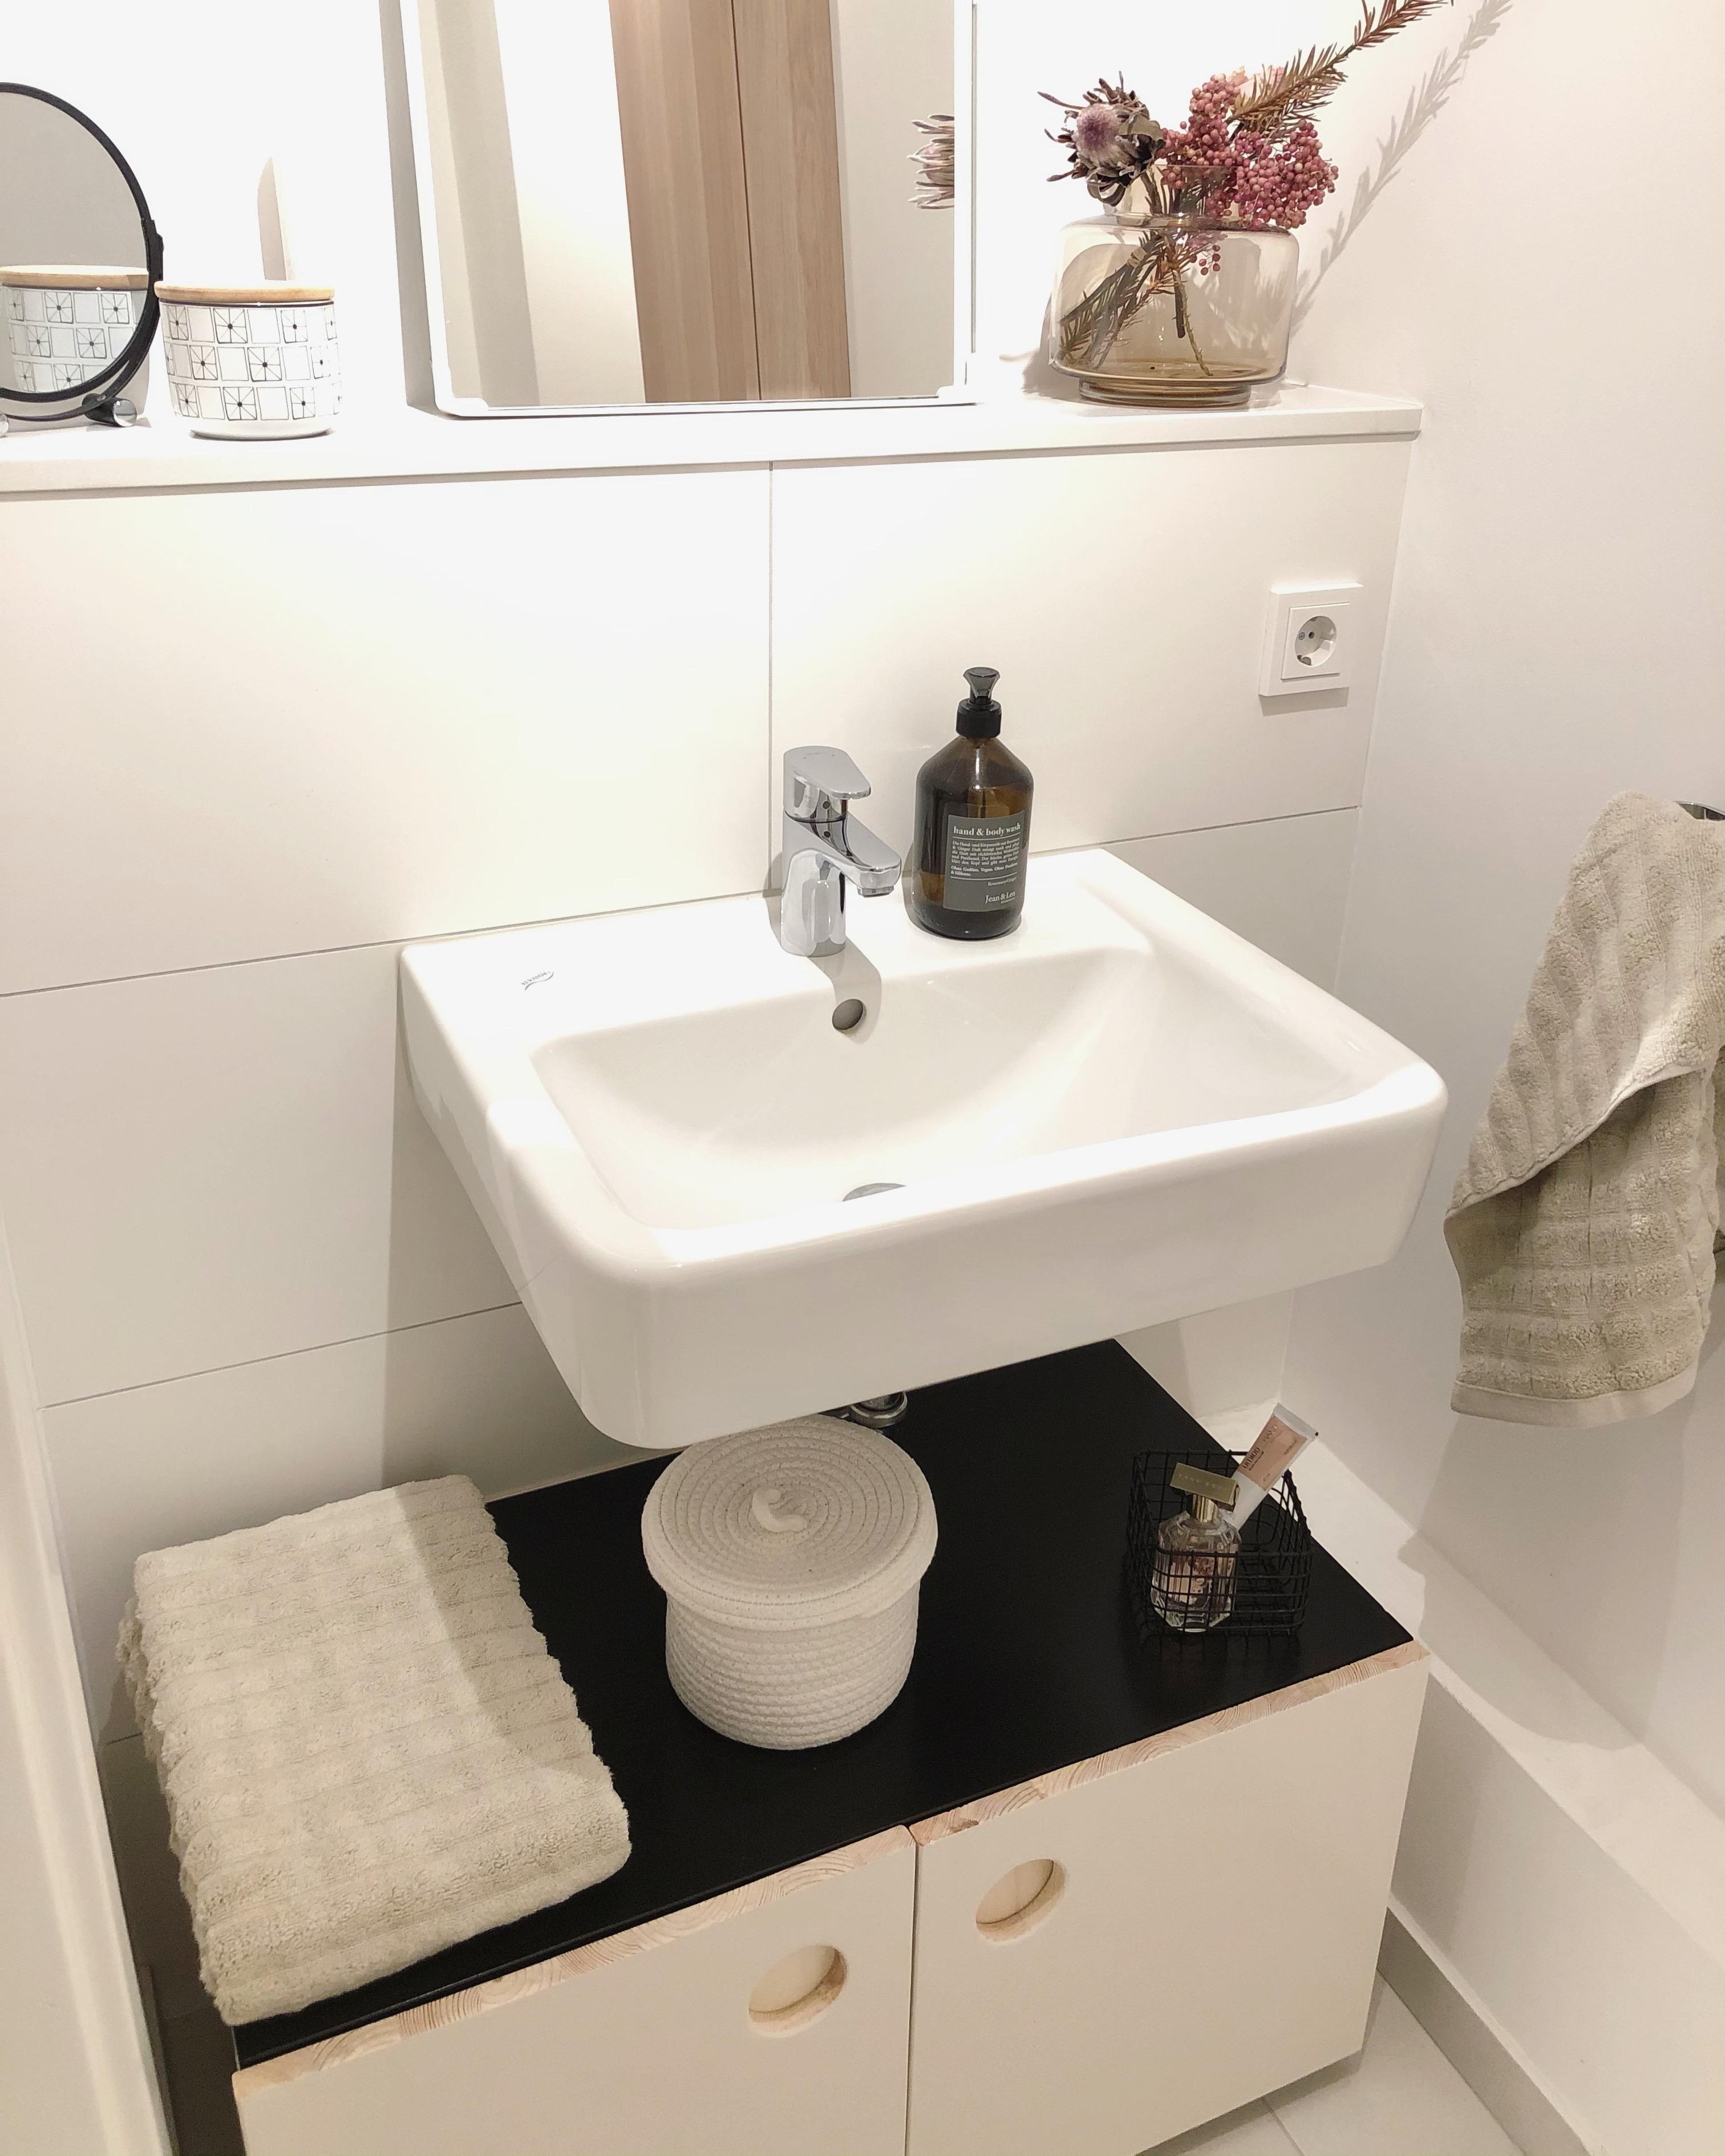 Unser #DIY #Badezimmer#schrank ist endlich fertig 🖤 #bathroom #Gästewc #DIYprojekt #couchstyle #Interior